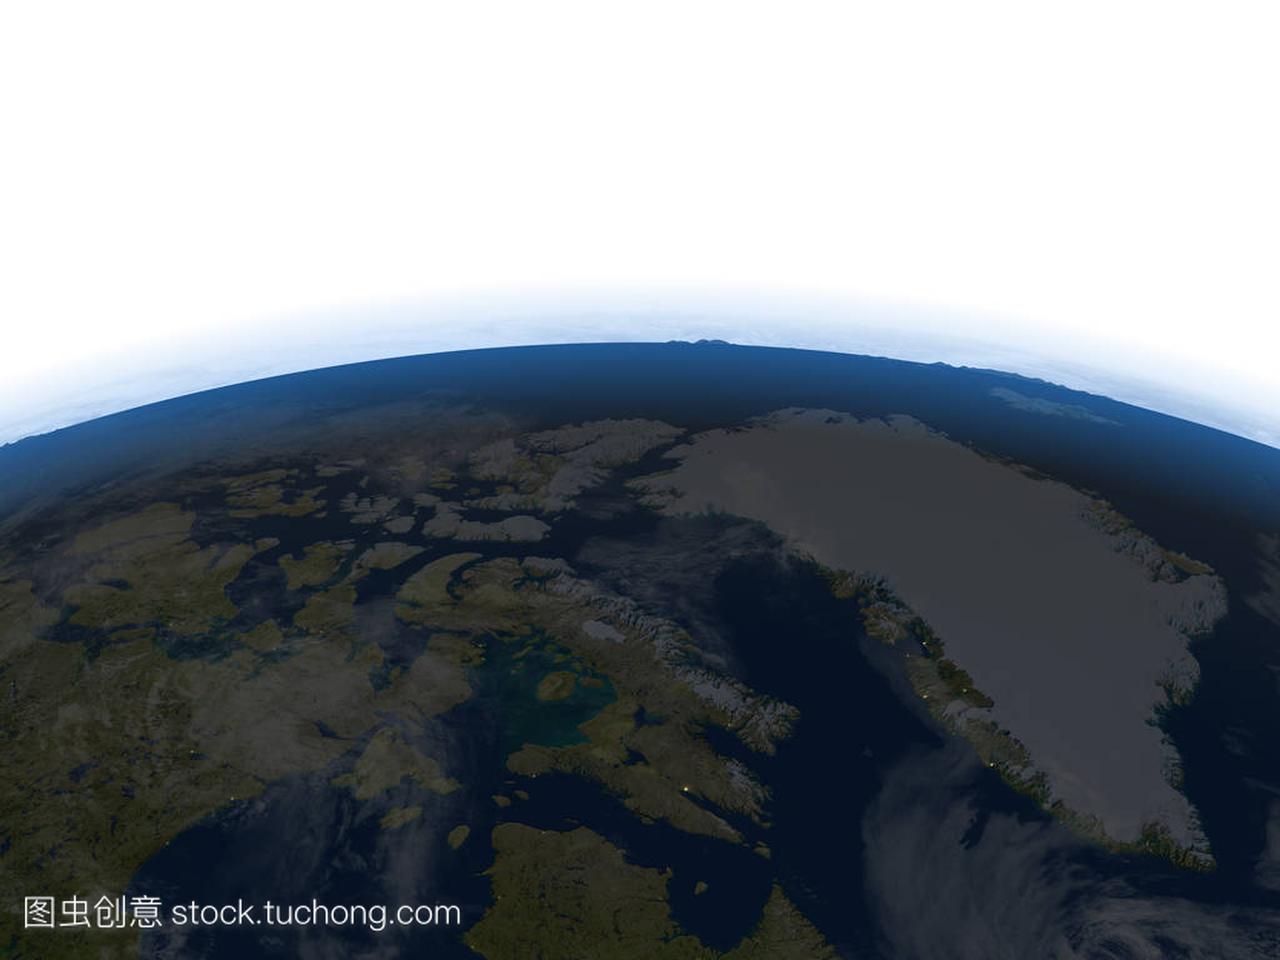 加拿大北部和格陵兰岛在晚上在地球上